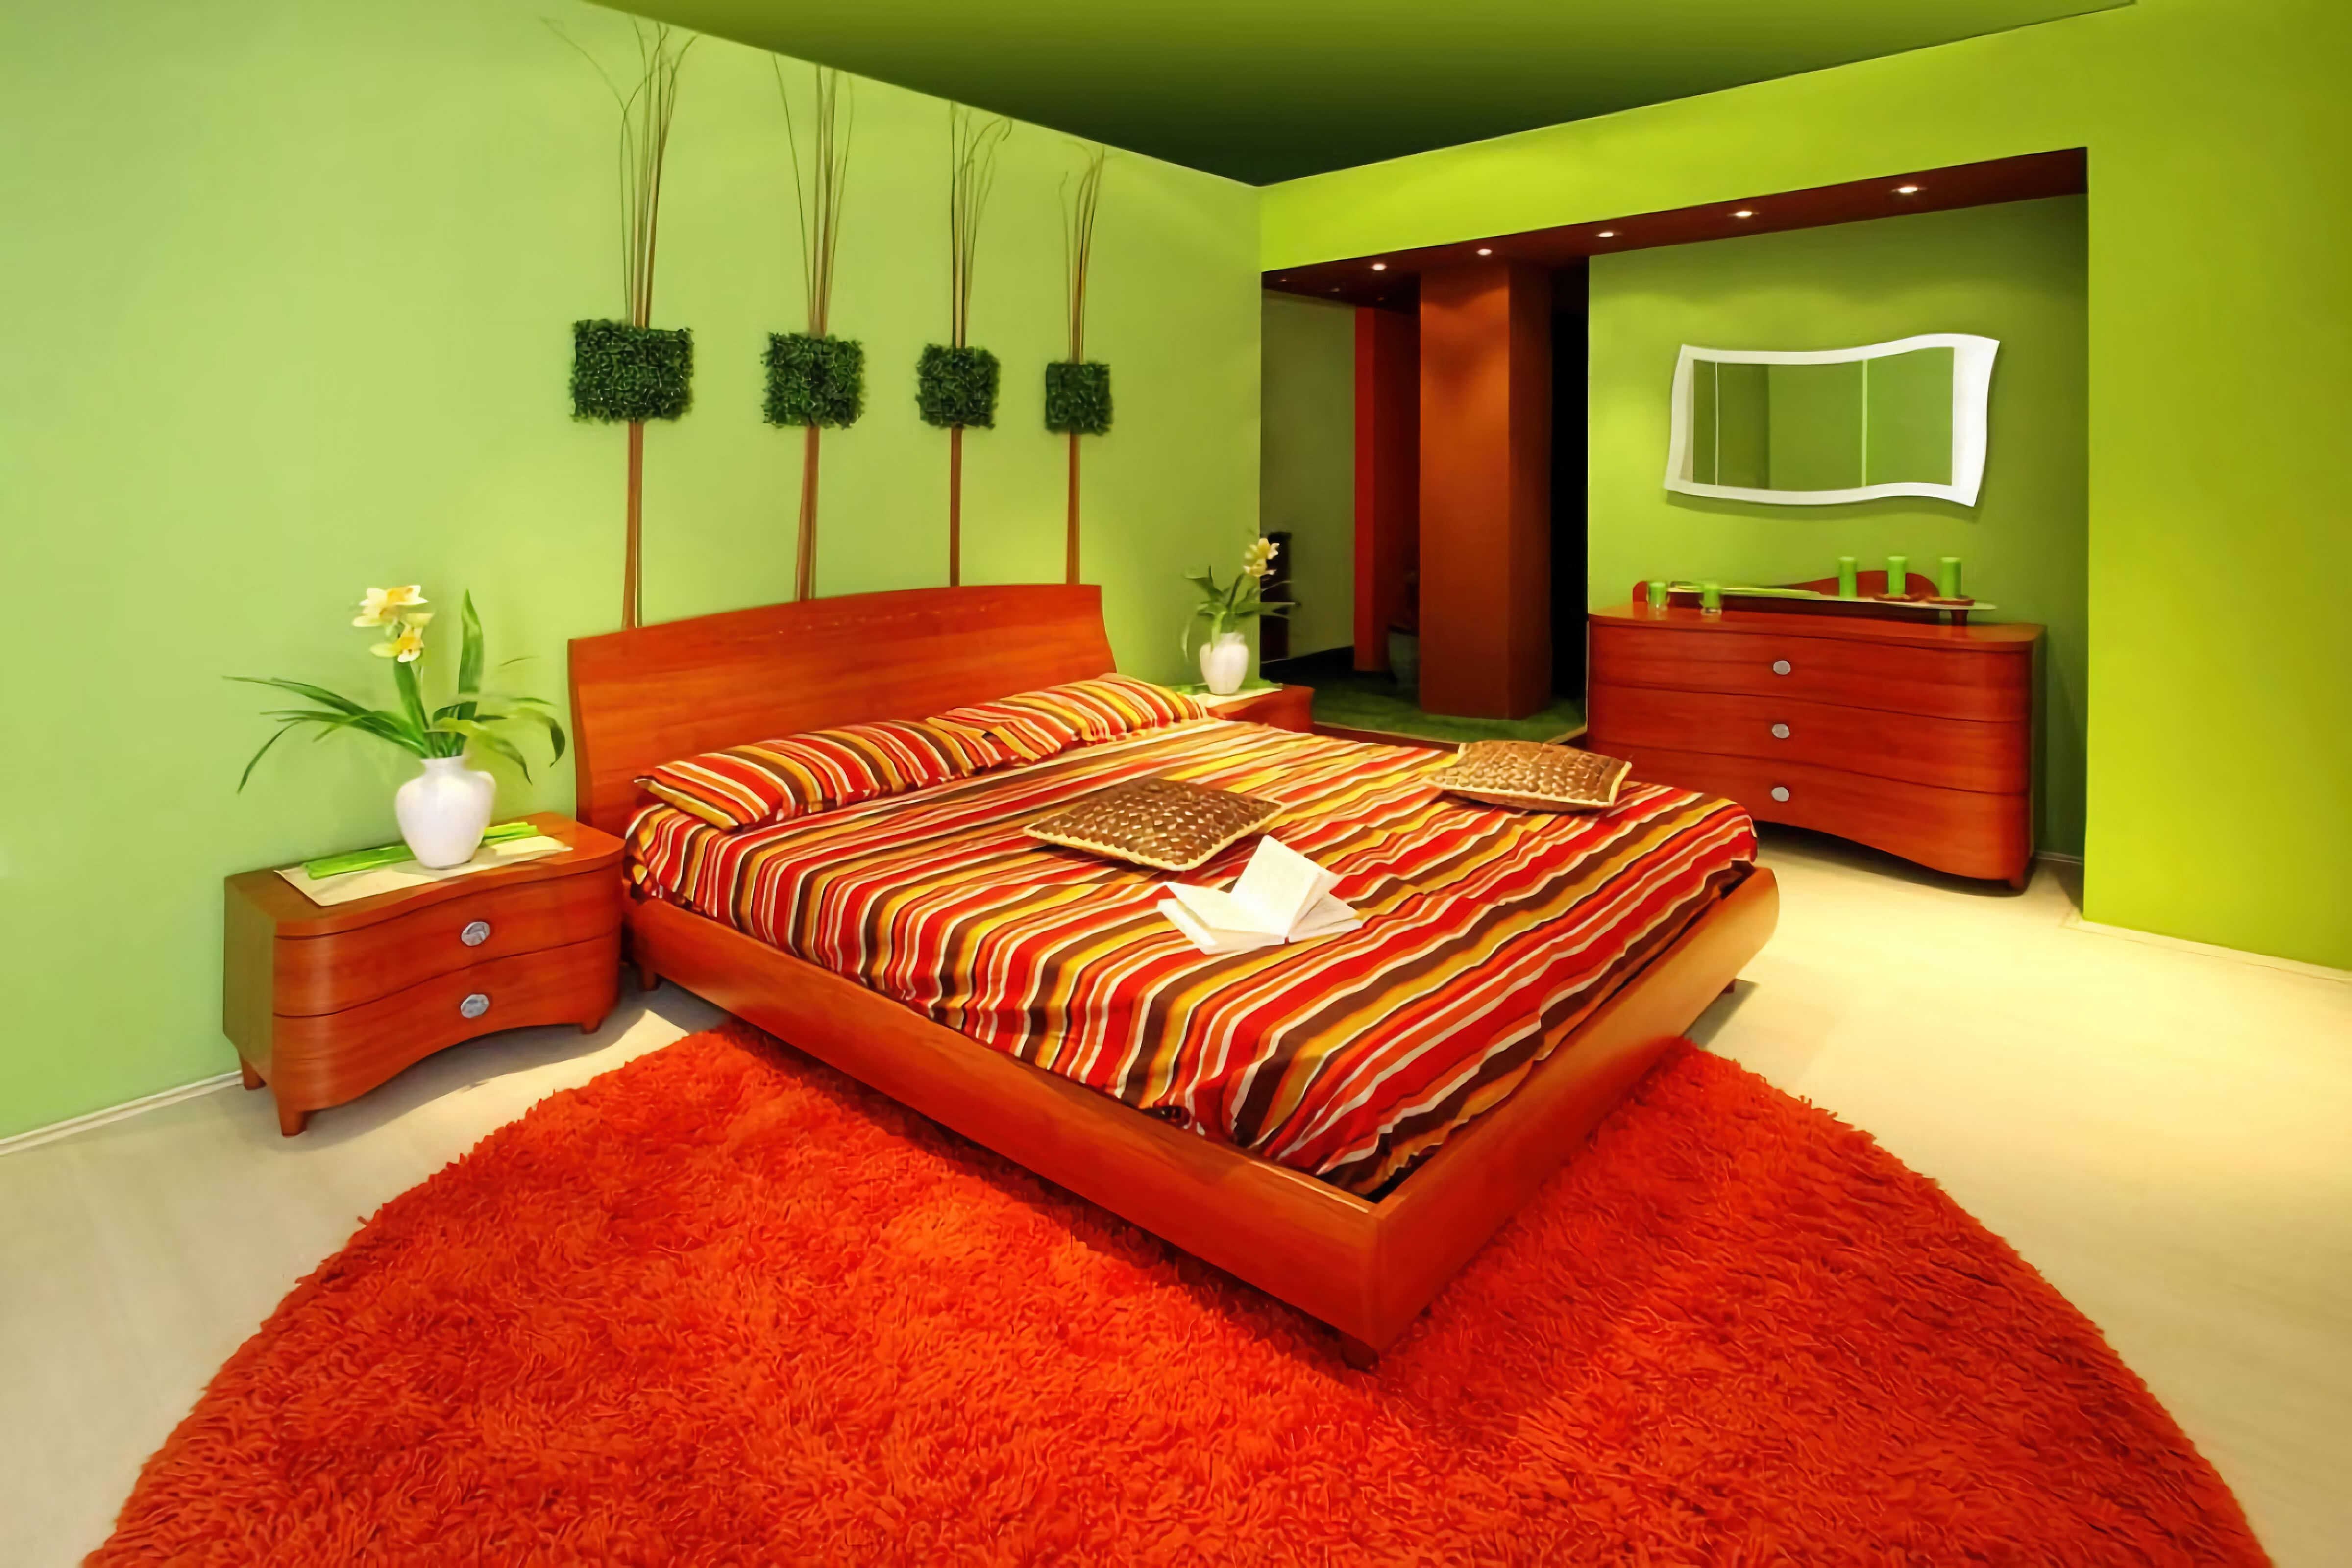 Room tone. Комната в оранжевом цвете. Интерьер в оранжевых тонах. Спальня в оранжевых тонах. Оранжевая стена.